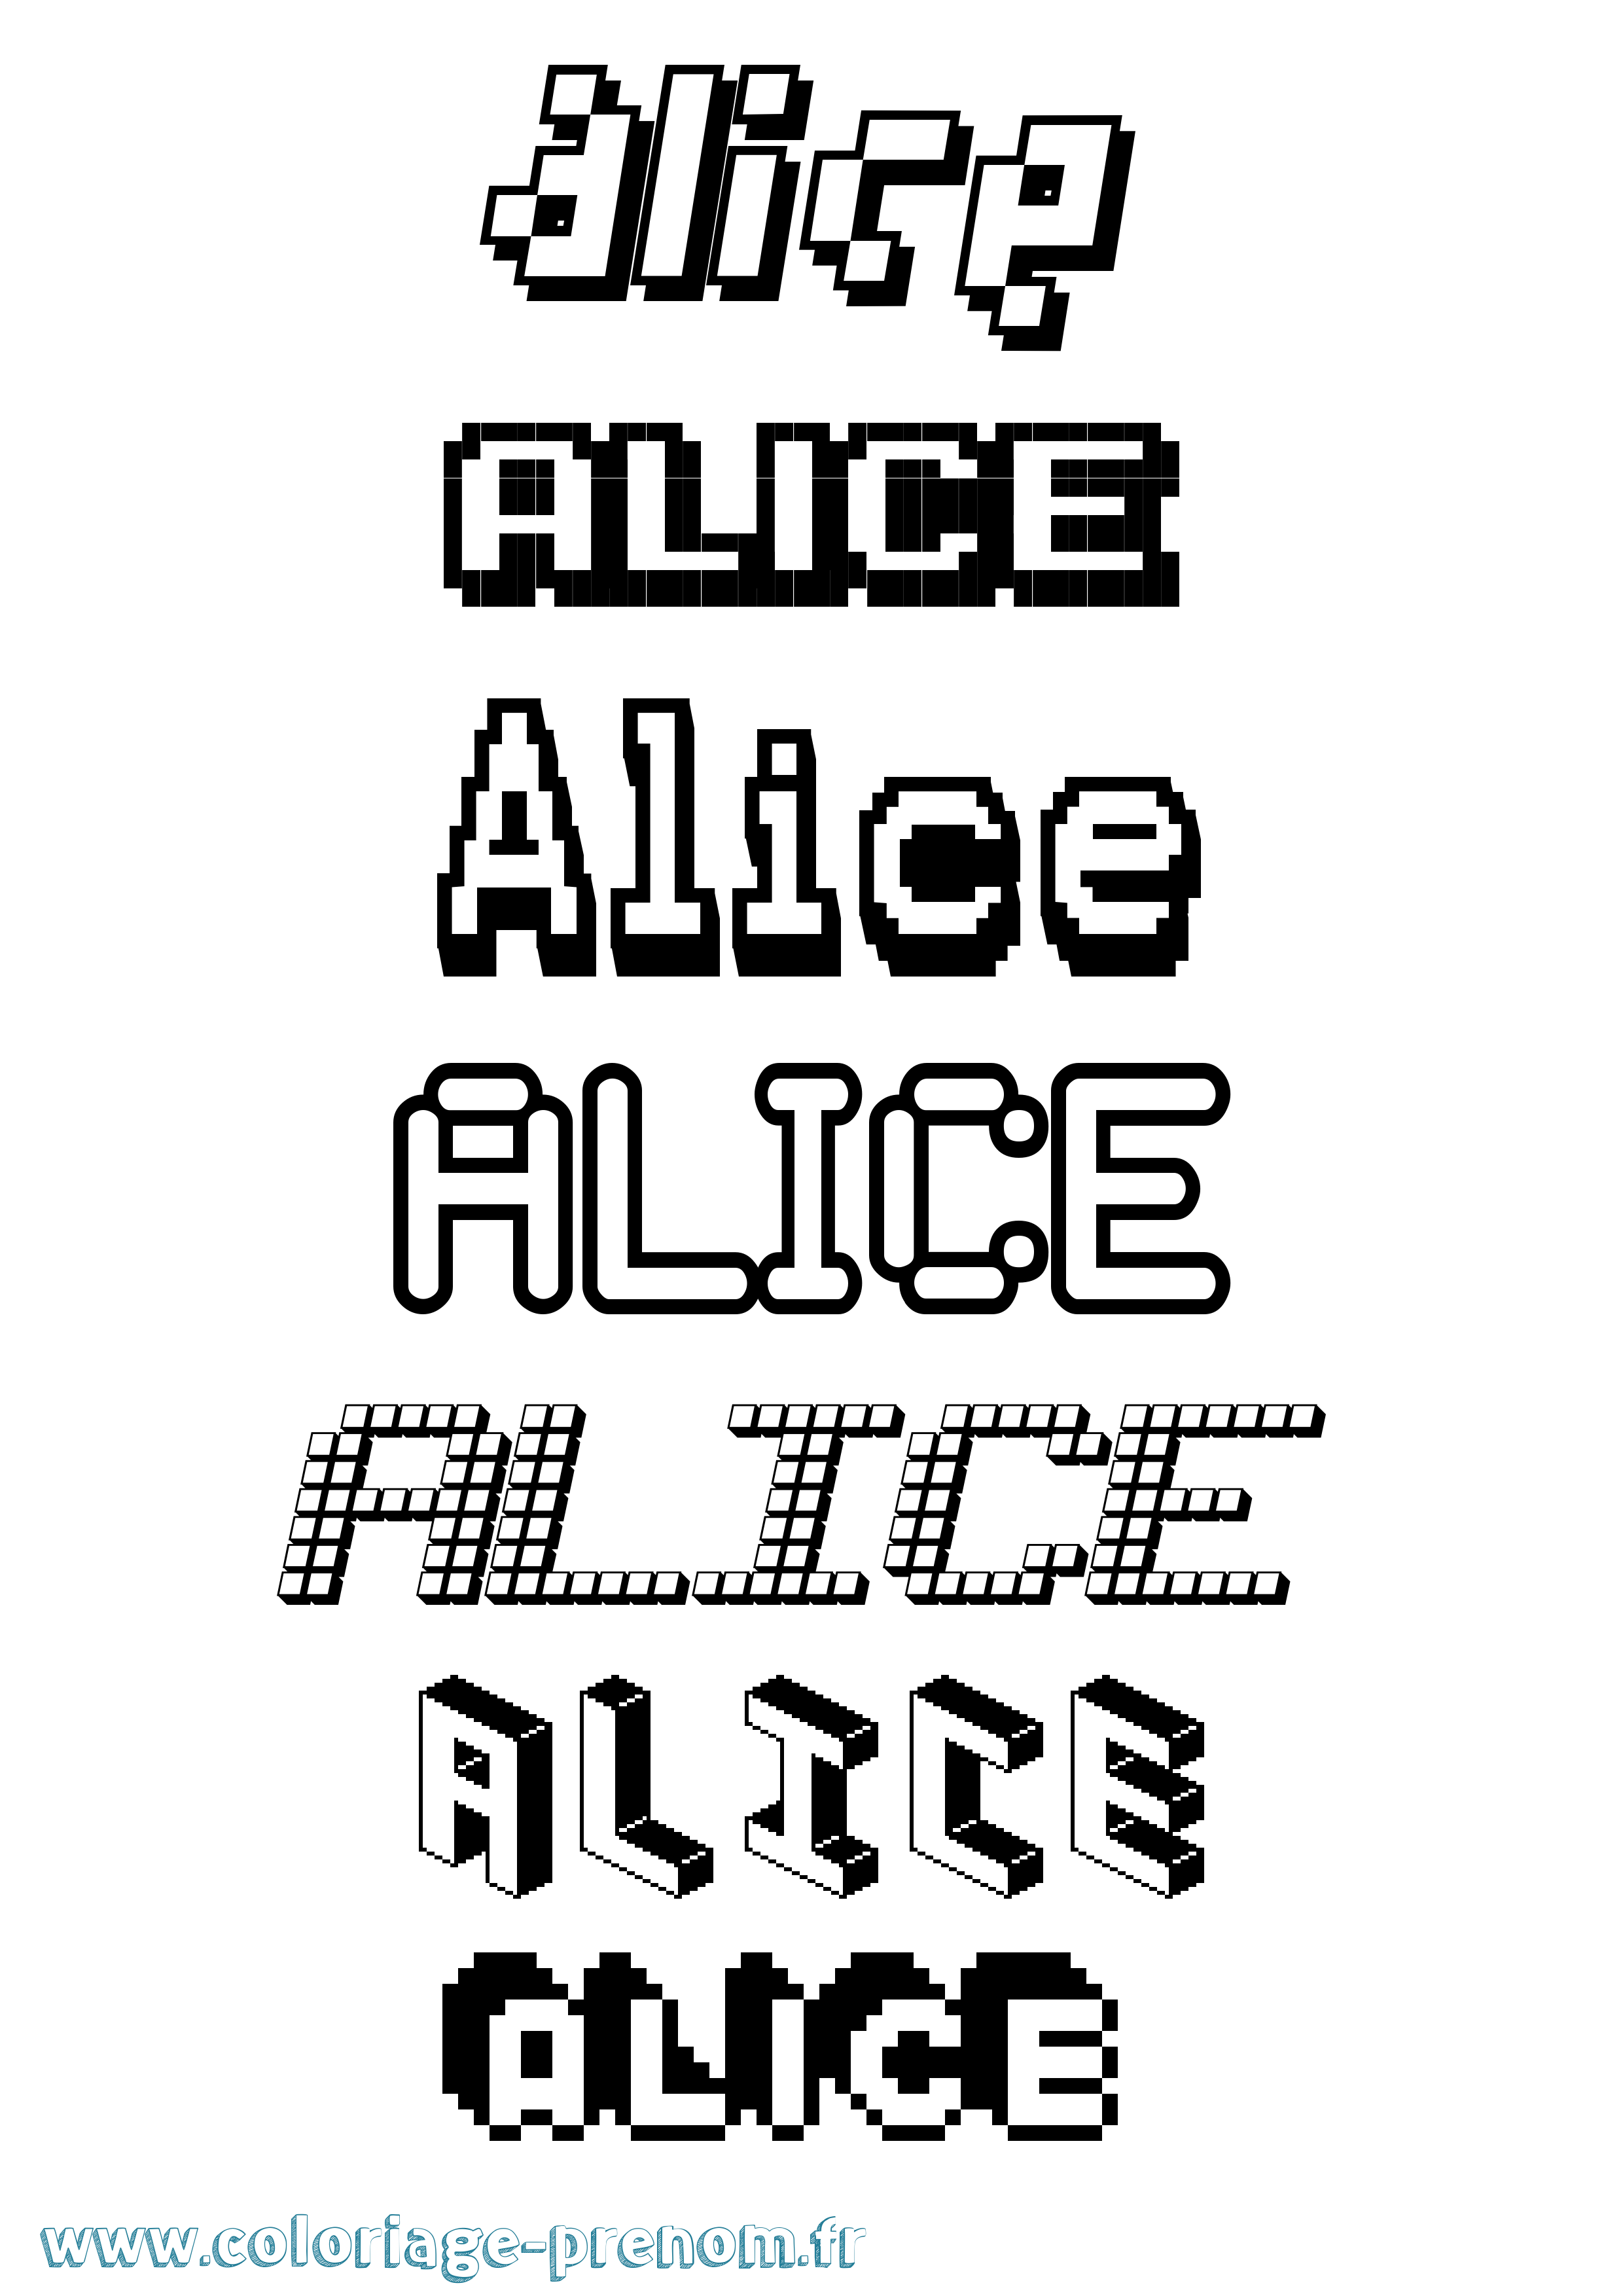 Coloriage prénom Alice Pixel